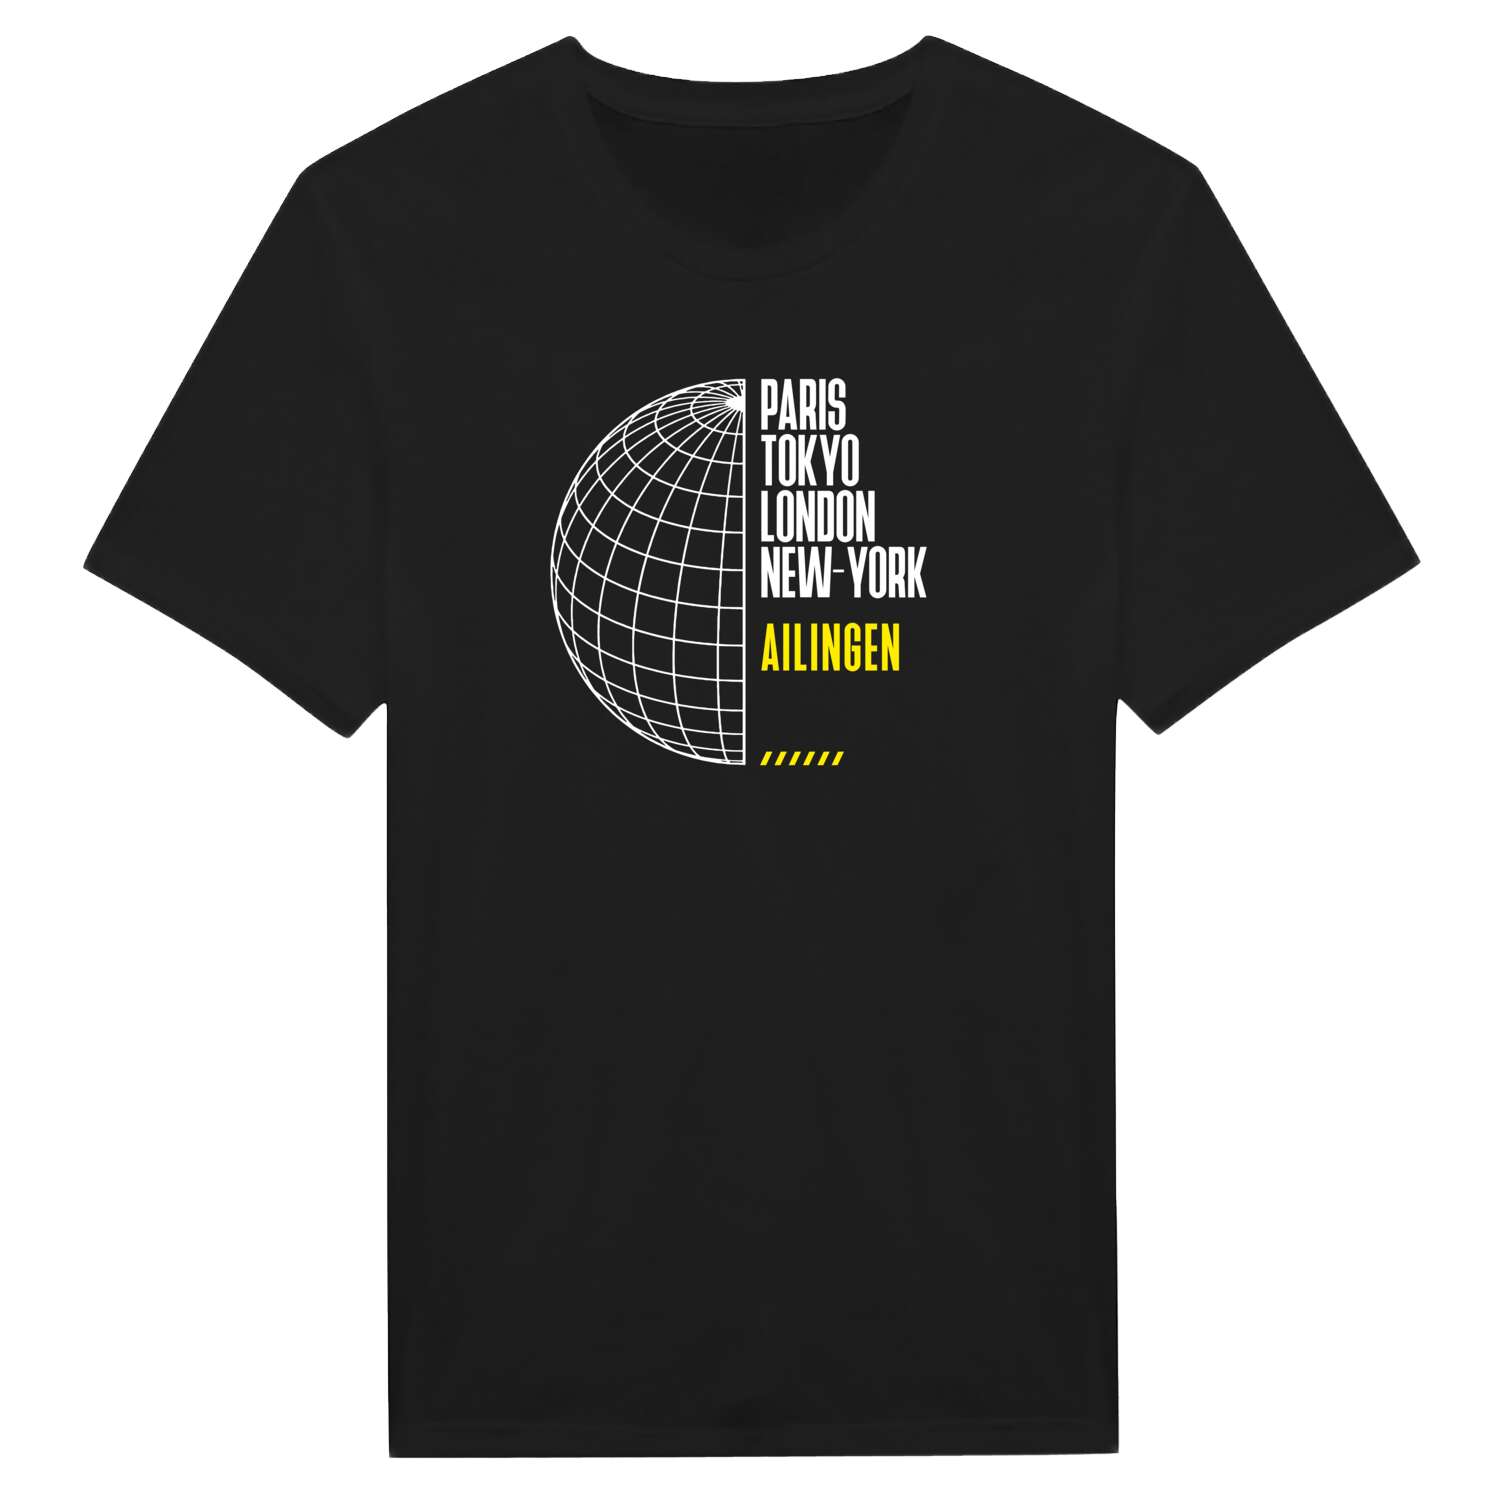 Ailingen T-Shirt »Paris Tokyo London«